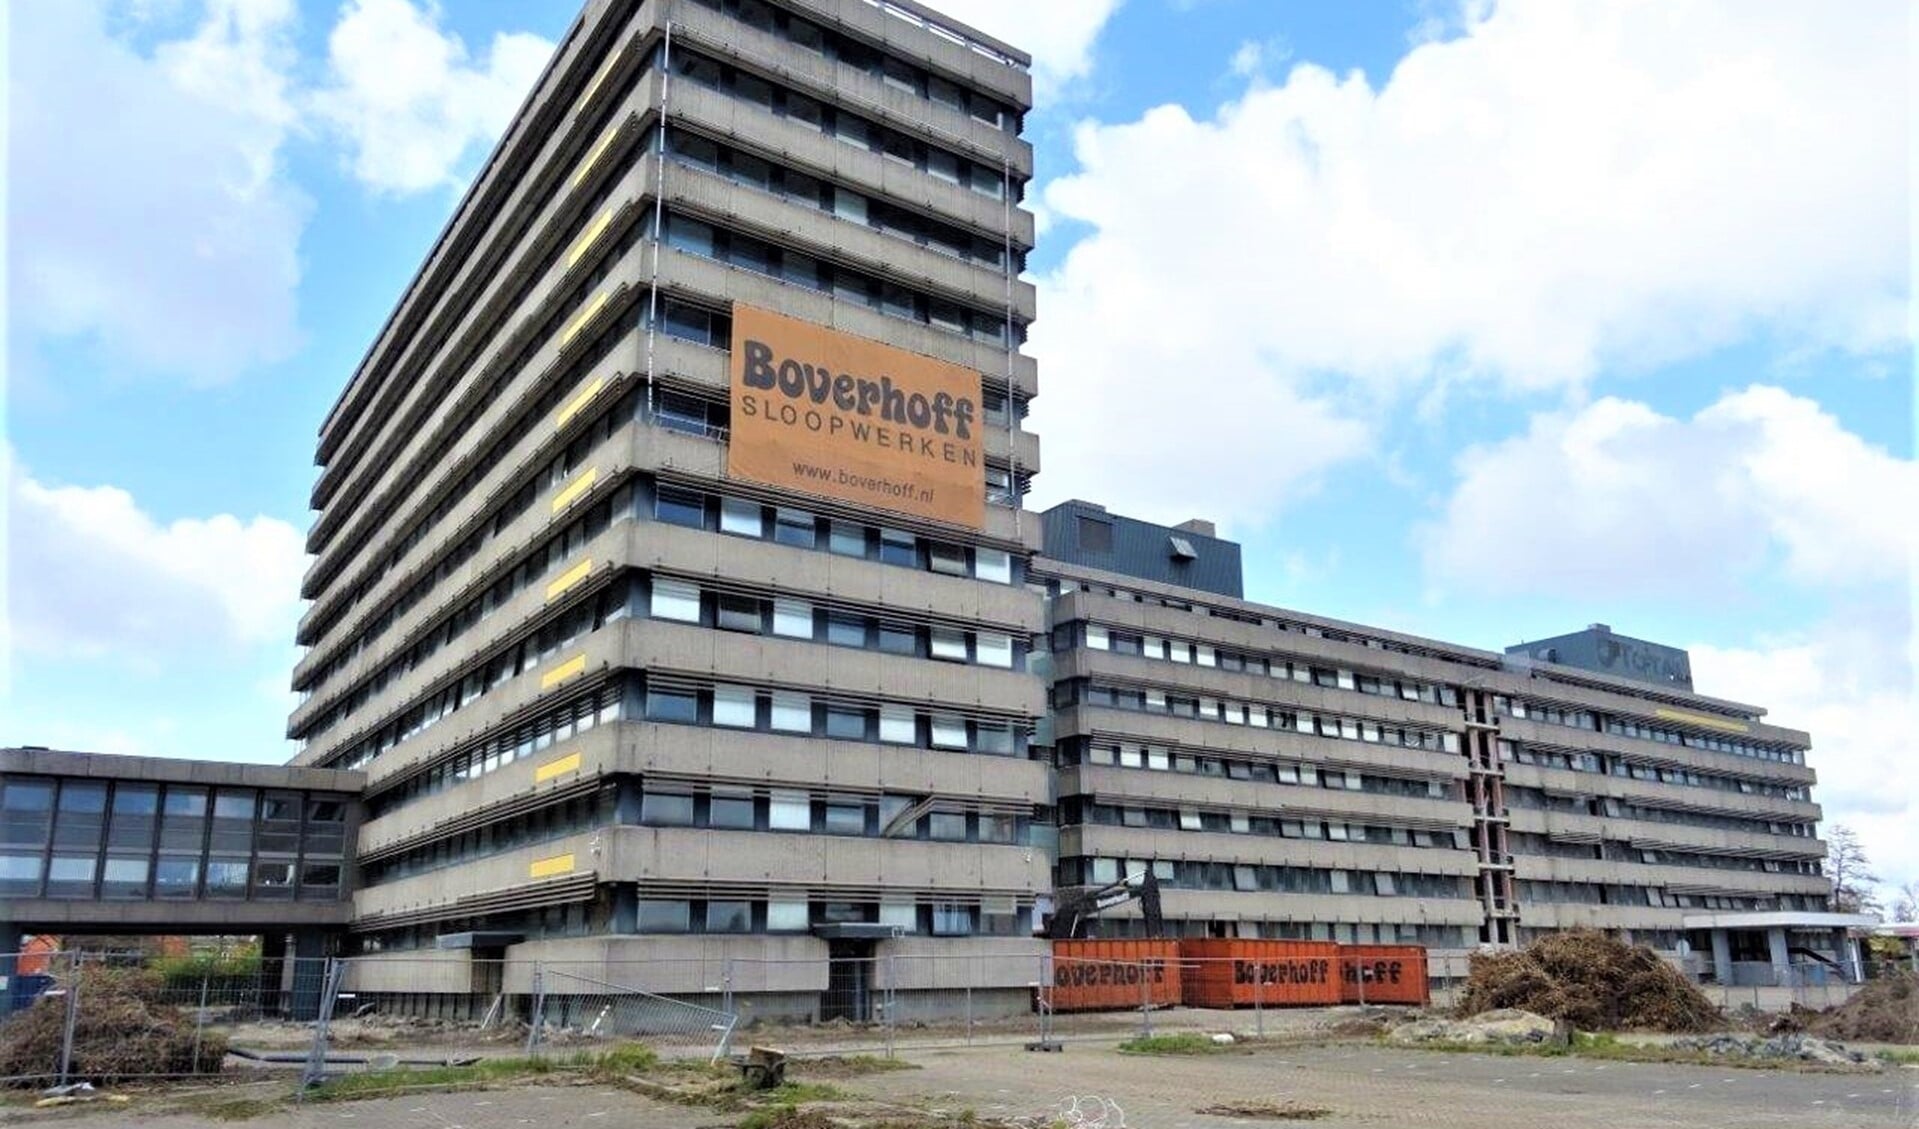 Het kantoorgebouw Damsigt waar voorheen oliemaatschappij Total was gevestigd (foto: Ap de Heus).